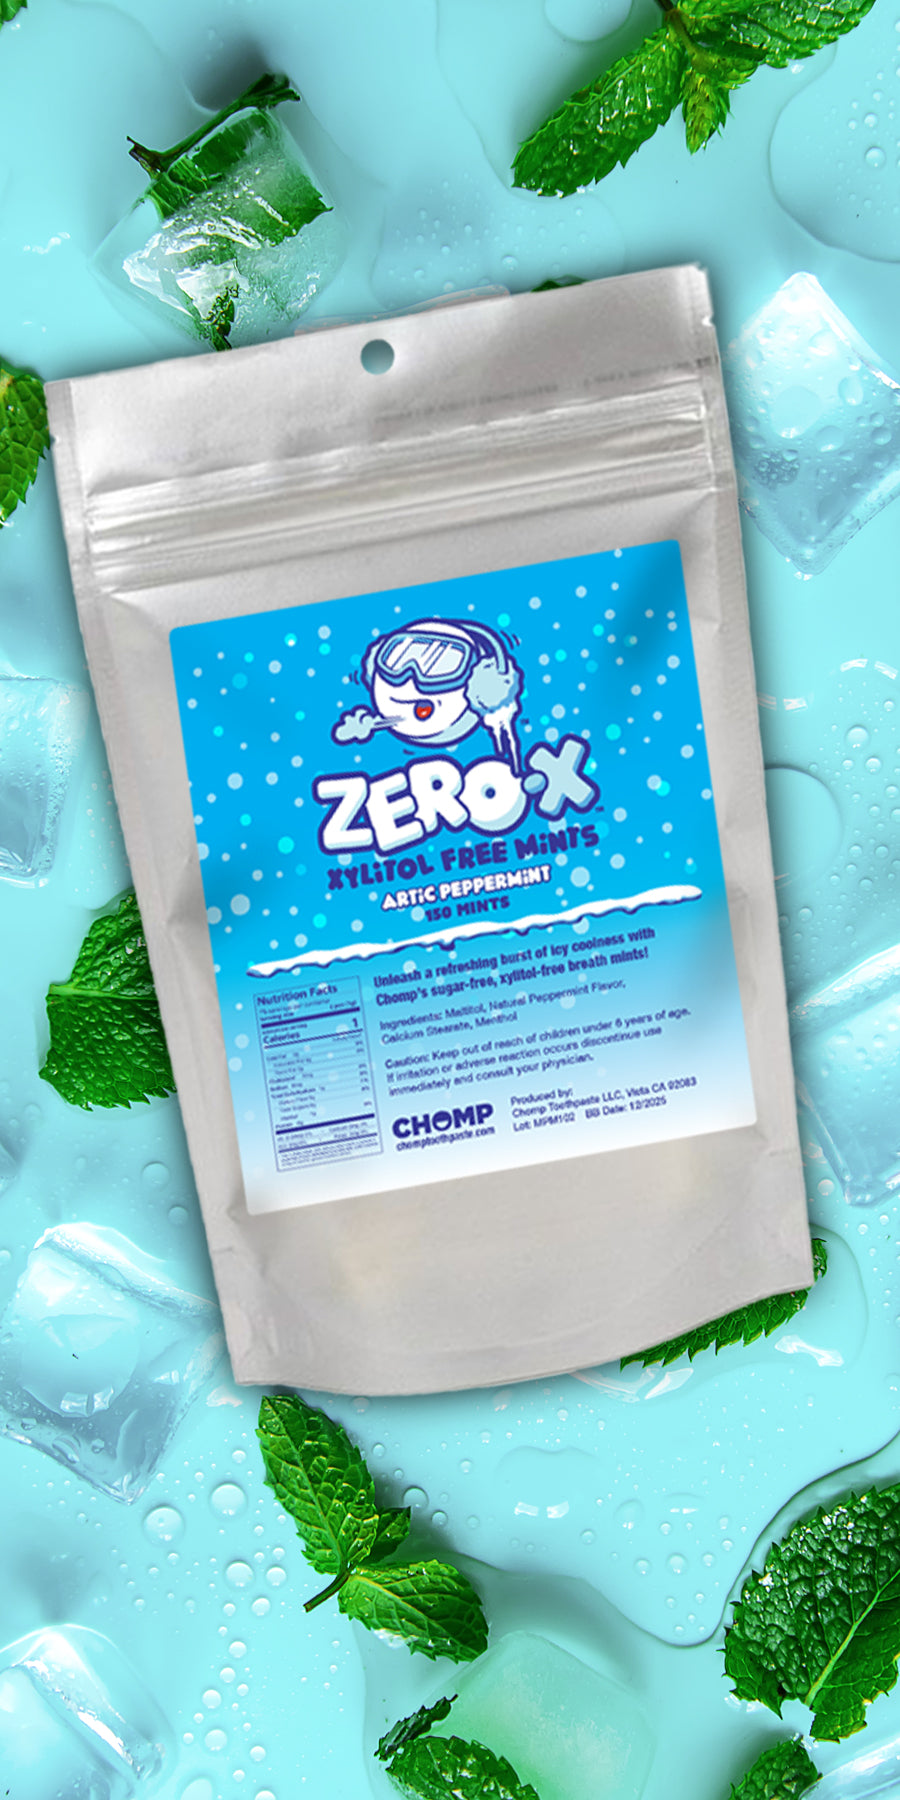 Zero-X Xylitol-free breath mints